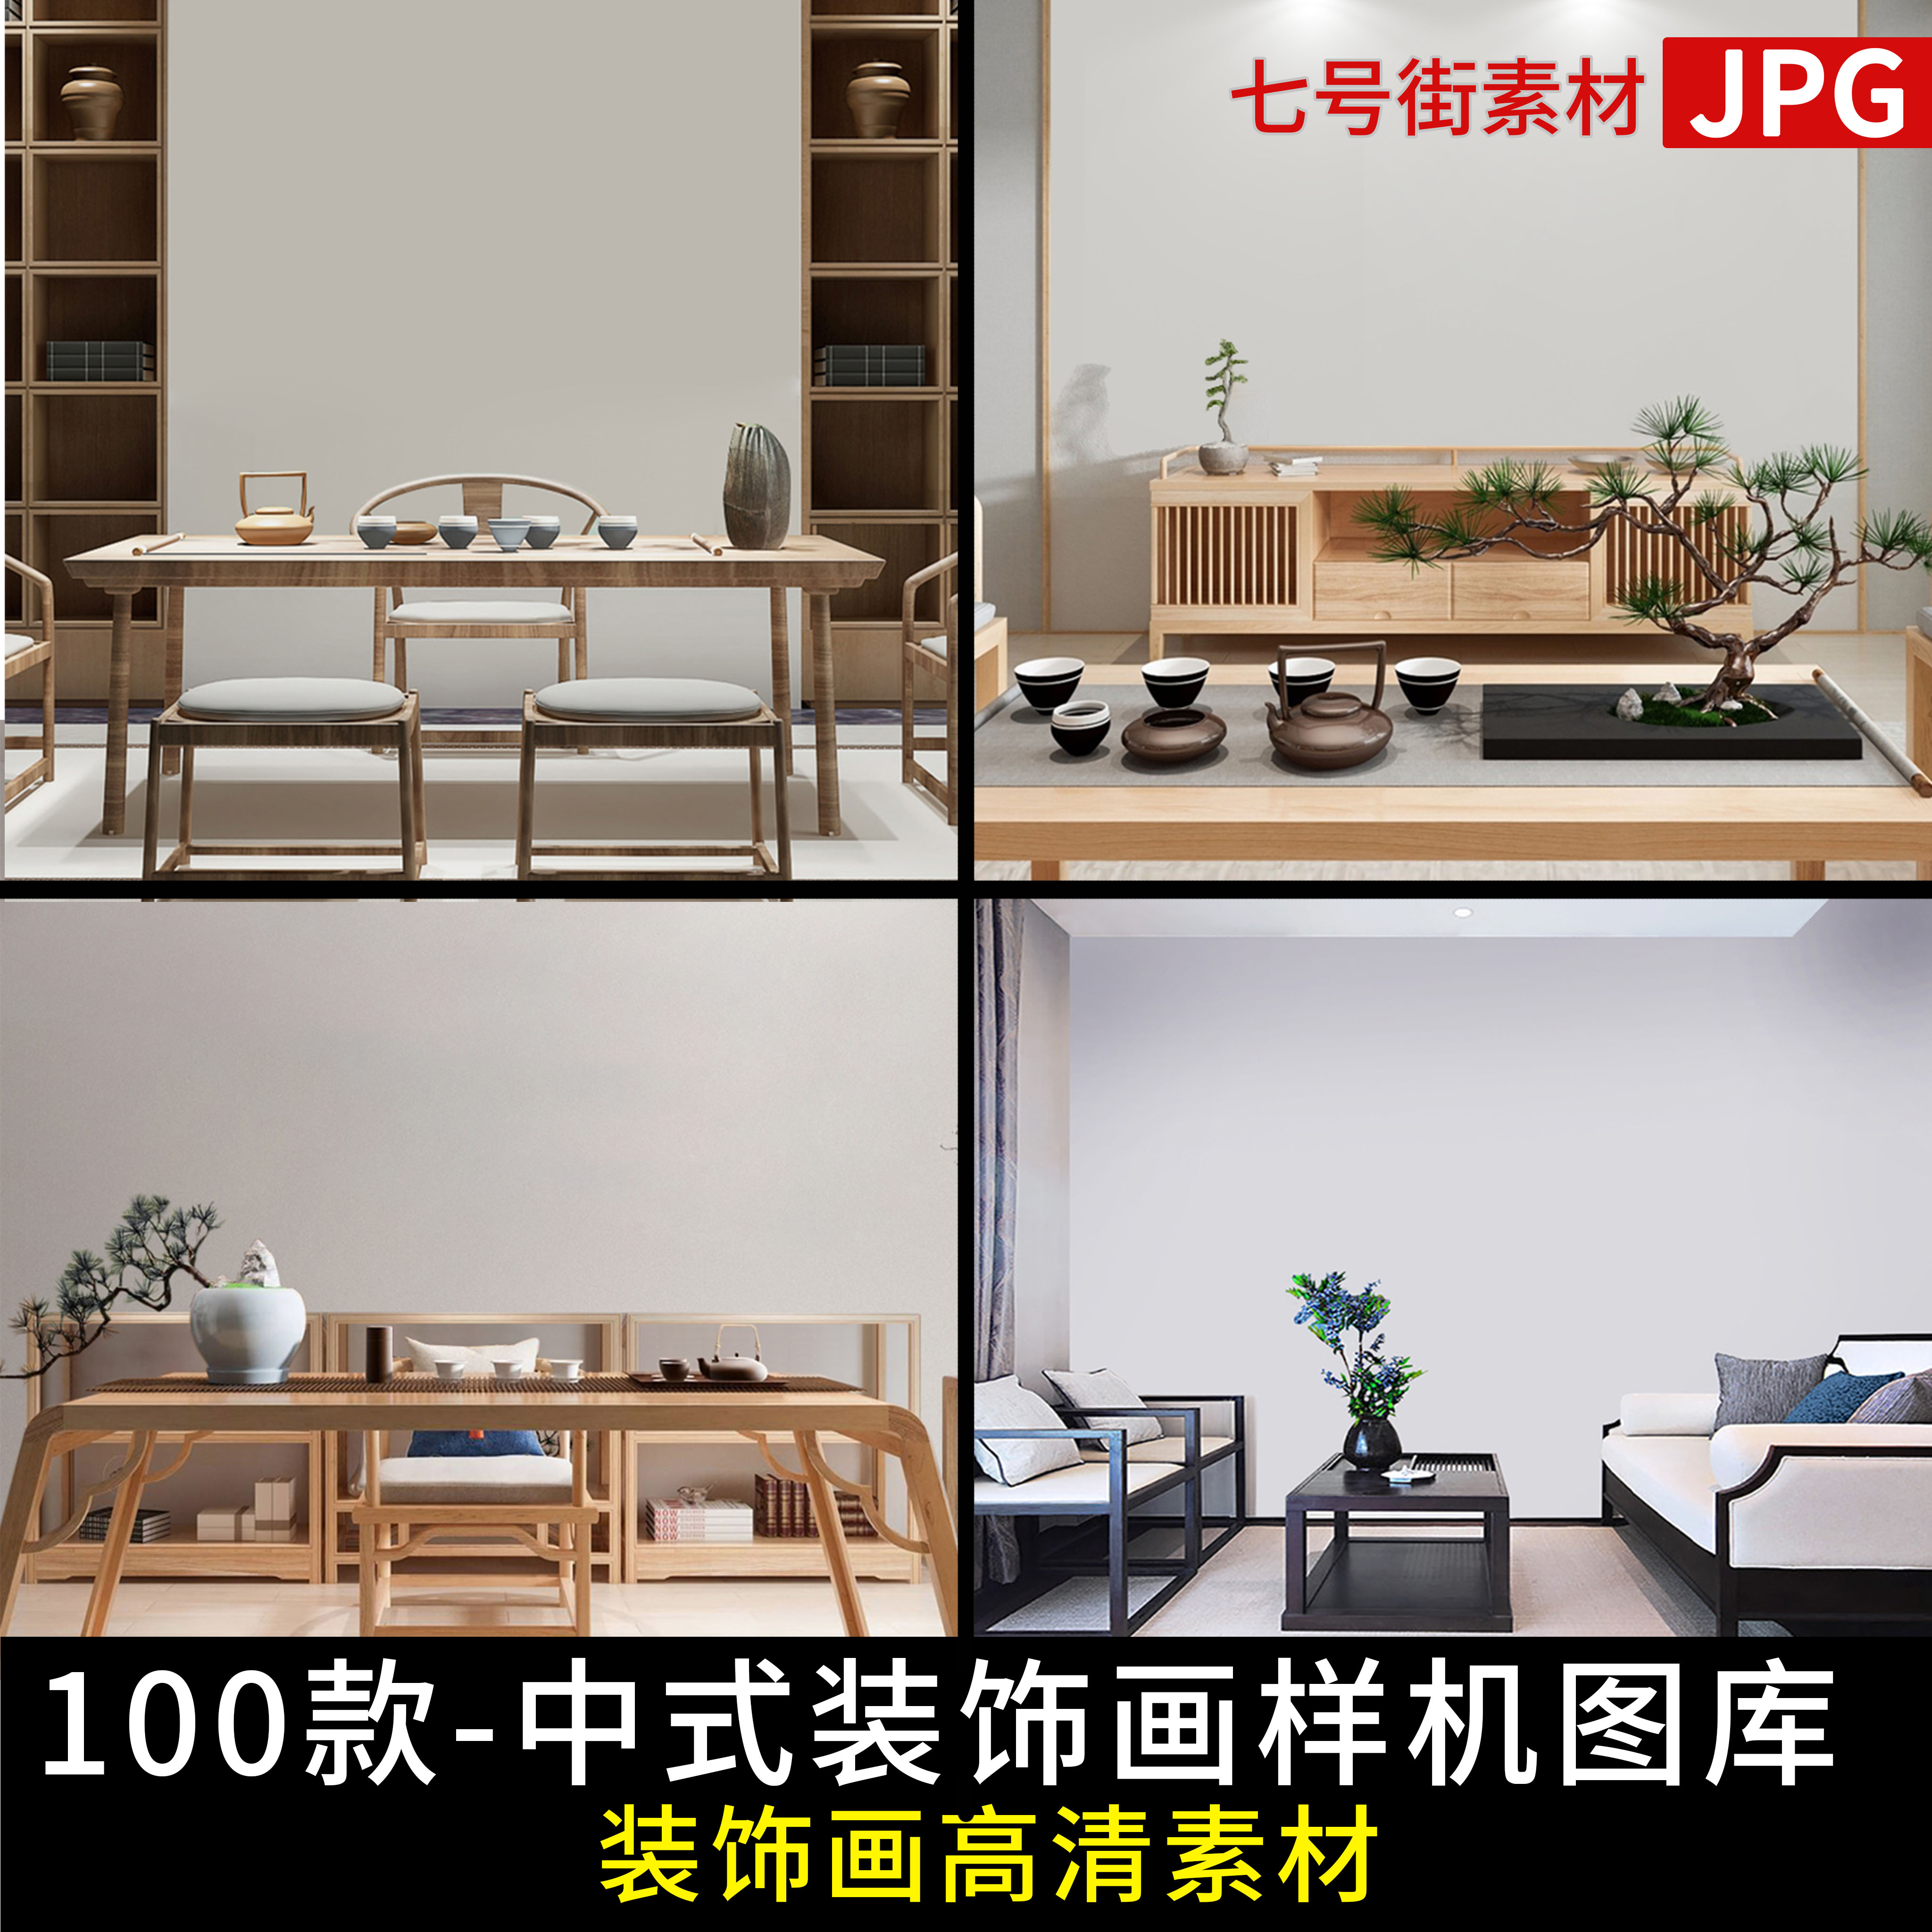 新中式装饰画样机沙发背景墙空白墙室内效果图模板场景jpg图库